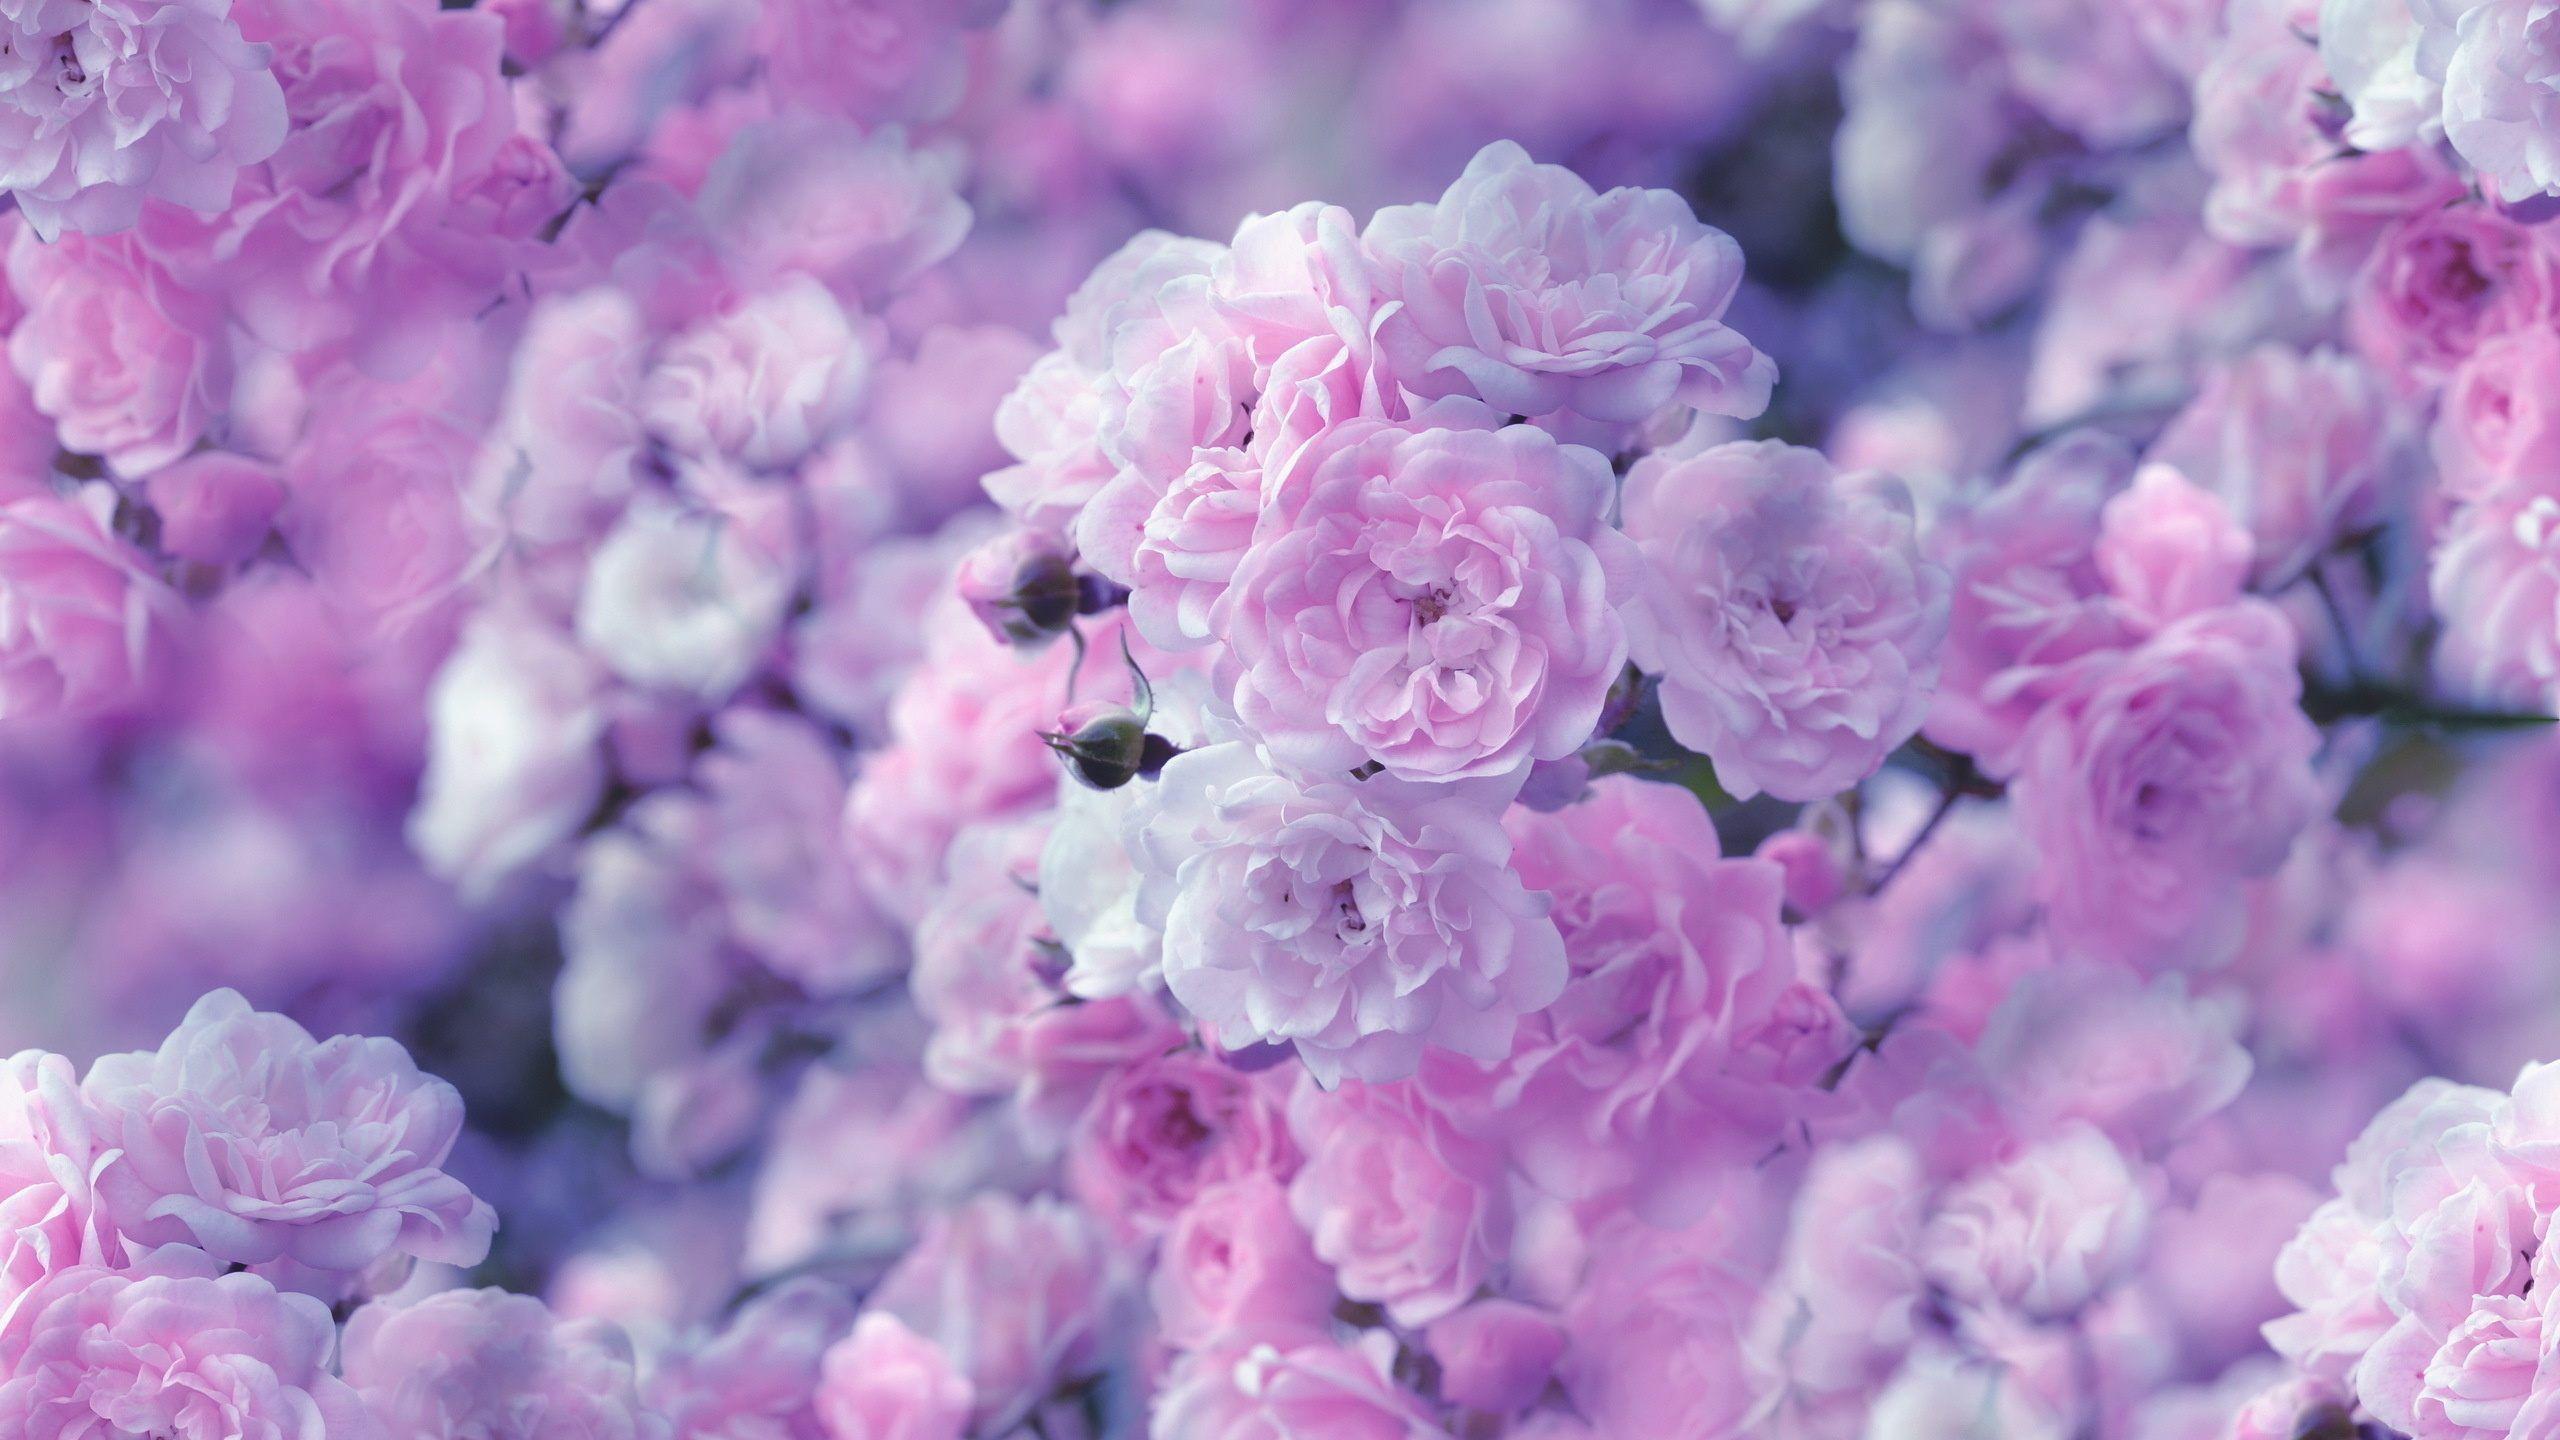 Hình nền hoa Pink Lilac sẽ mang đến cho bạn những trải nghiệm thú vị với màu hồng đầy sức sống và màu tím đẹp mắt. Hãy xem hình ảnh và tìm hiểu những kỹ thuật vẽ tranh đẹp mắt để tạo ra những bức tranh phong cảnh hoa đẹp nhất. Bạn sẽ không thể cưỡng lại sự kết hợp màu sắc tuyệt đẹp này!